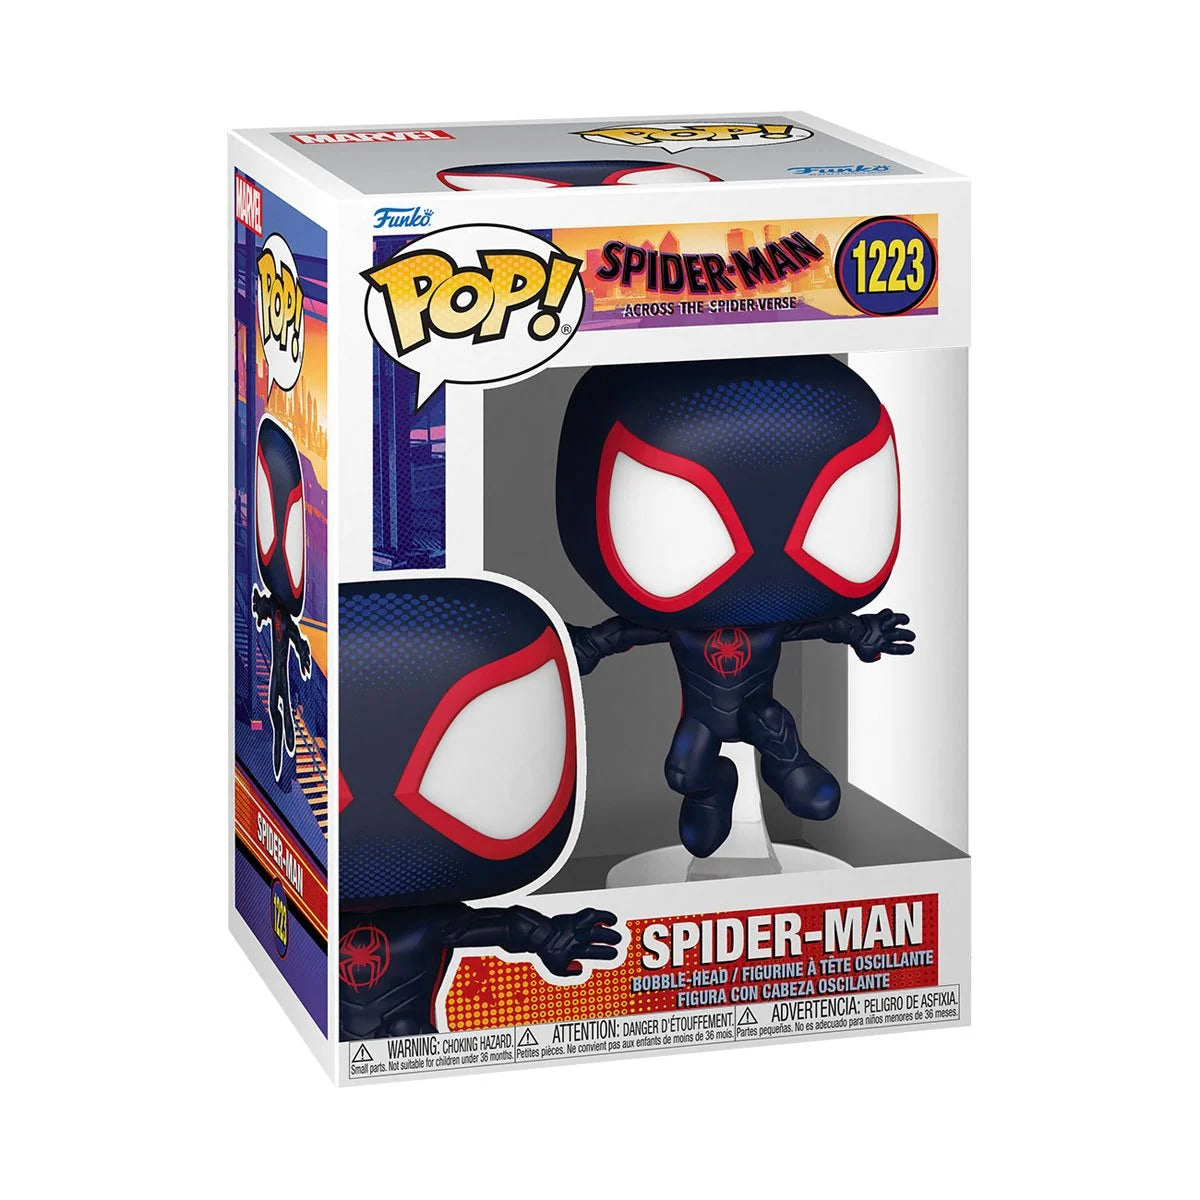 Spider-Man Across the Spider-Verse Spider Man Funko Pop! Vinyl Figure